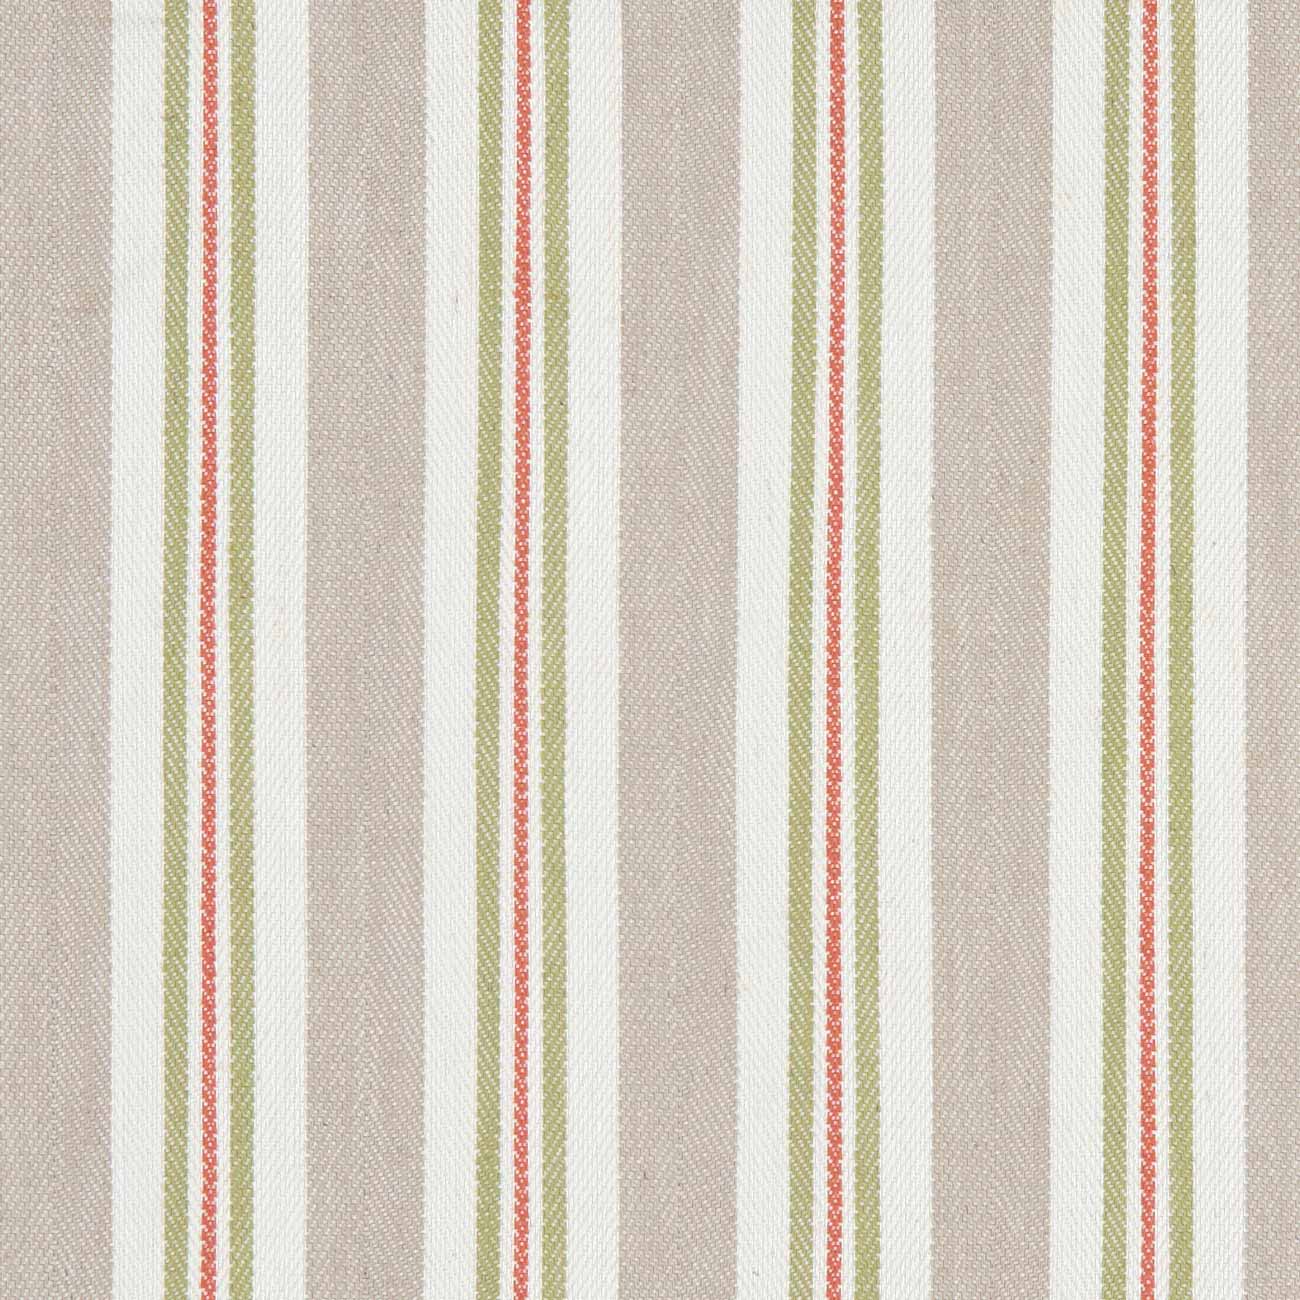 Alderton Spice/Linen Fabric by Clarke & Clarke